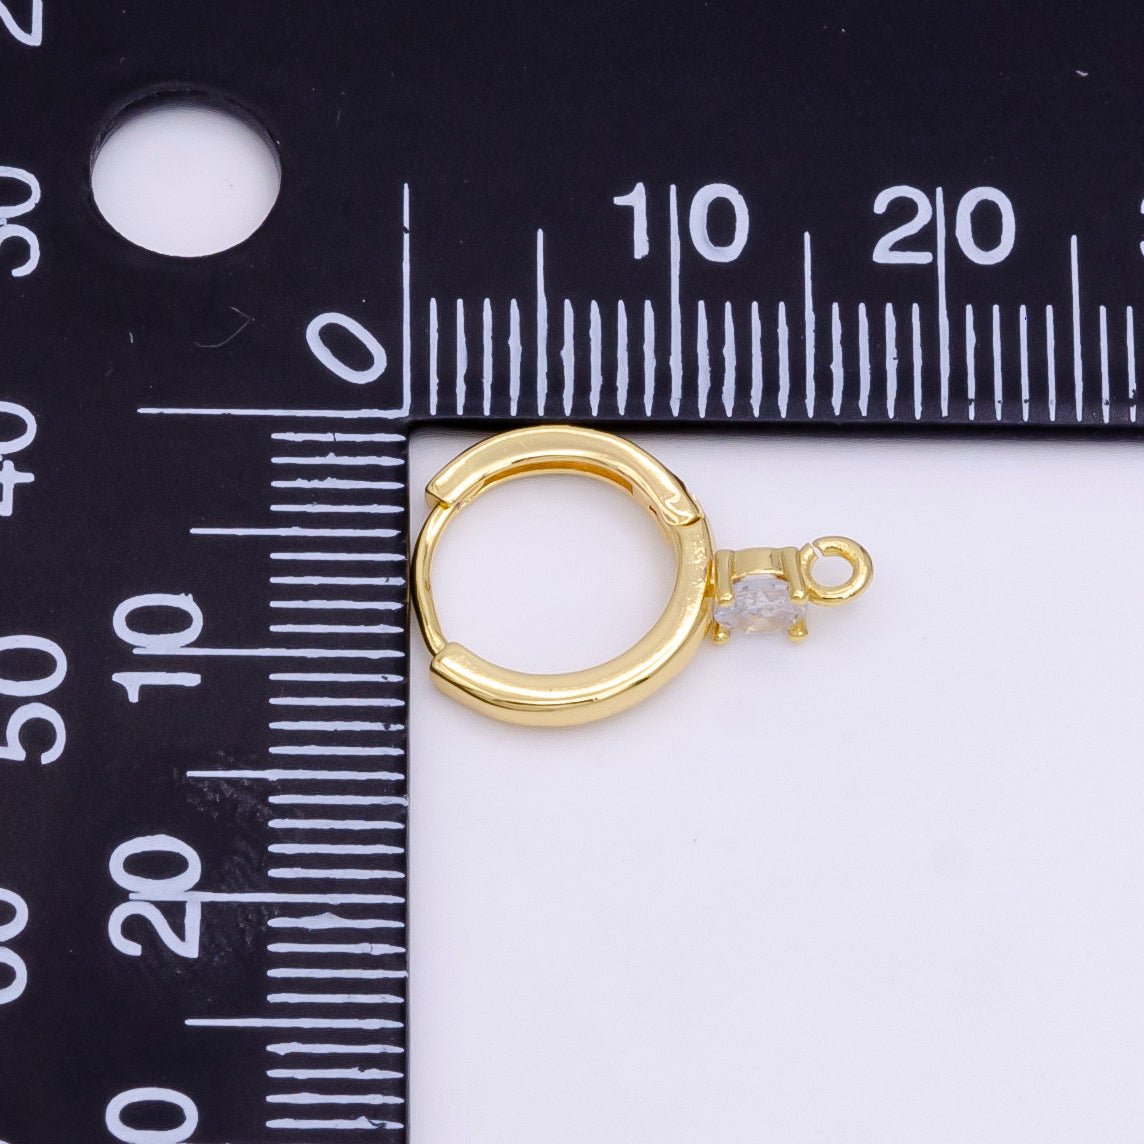 14K Gold Filled Clear CZ Open Loop 12mm Huggie Earrings in Gold & Silver | Z614 Z617 - DLUXCA